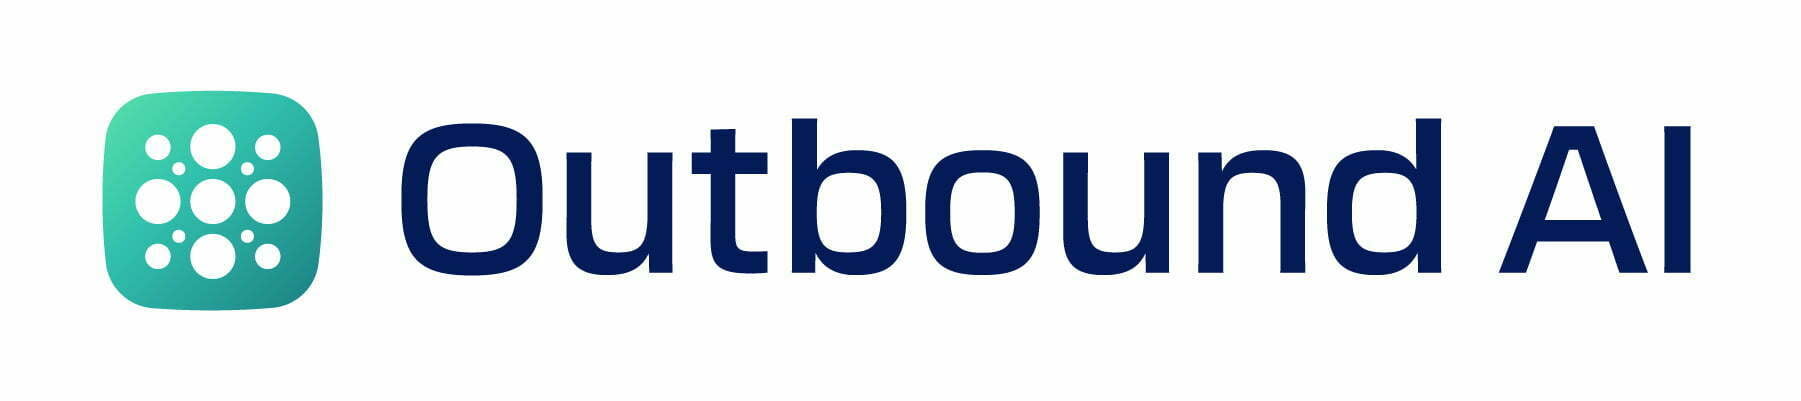 Outbound AI logo